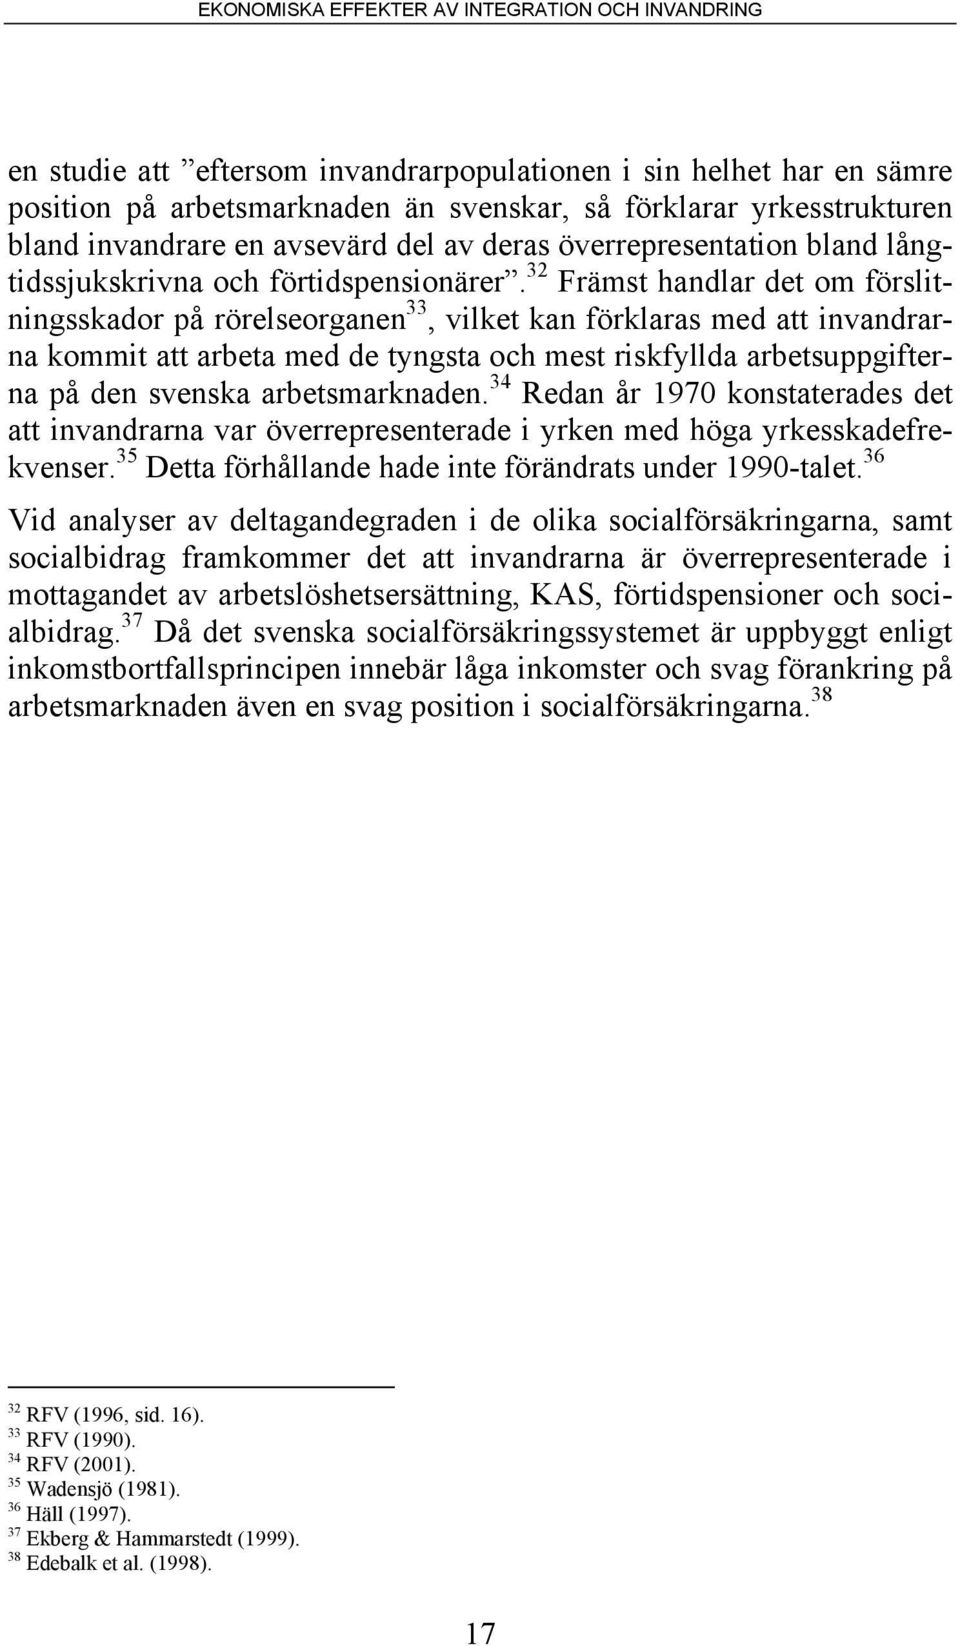 32 Främst handlar det om förslitningsskador på rörelseorganen 33, vilket kan förklaras med att invandrarna kommit att arbeta med de tyngsta och mest riskfyllda arbetsuppgifterna på den svenska